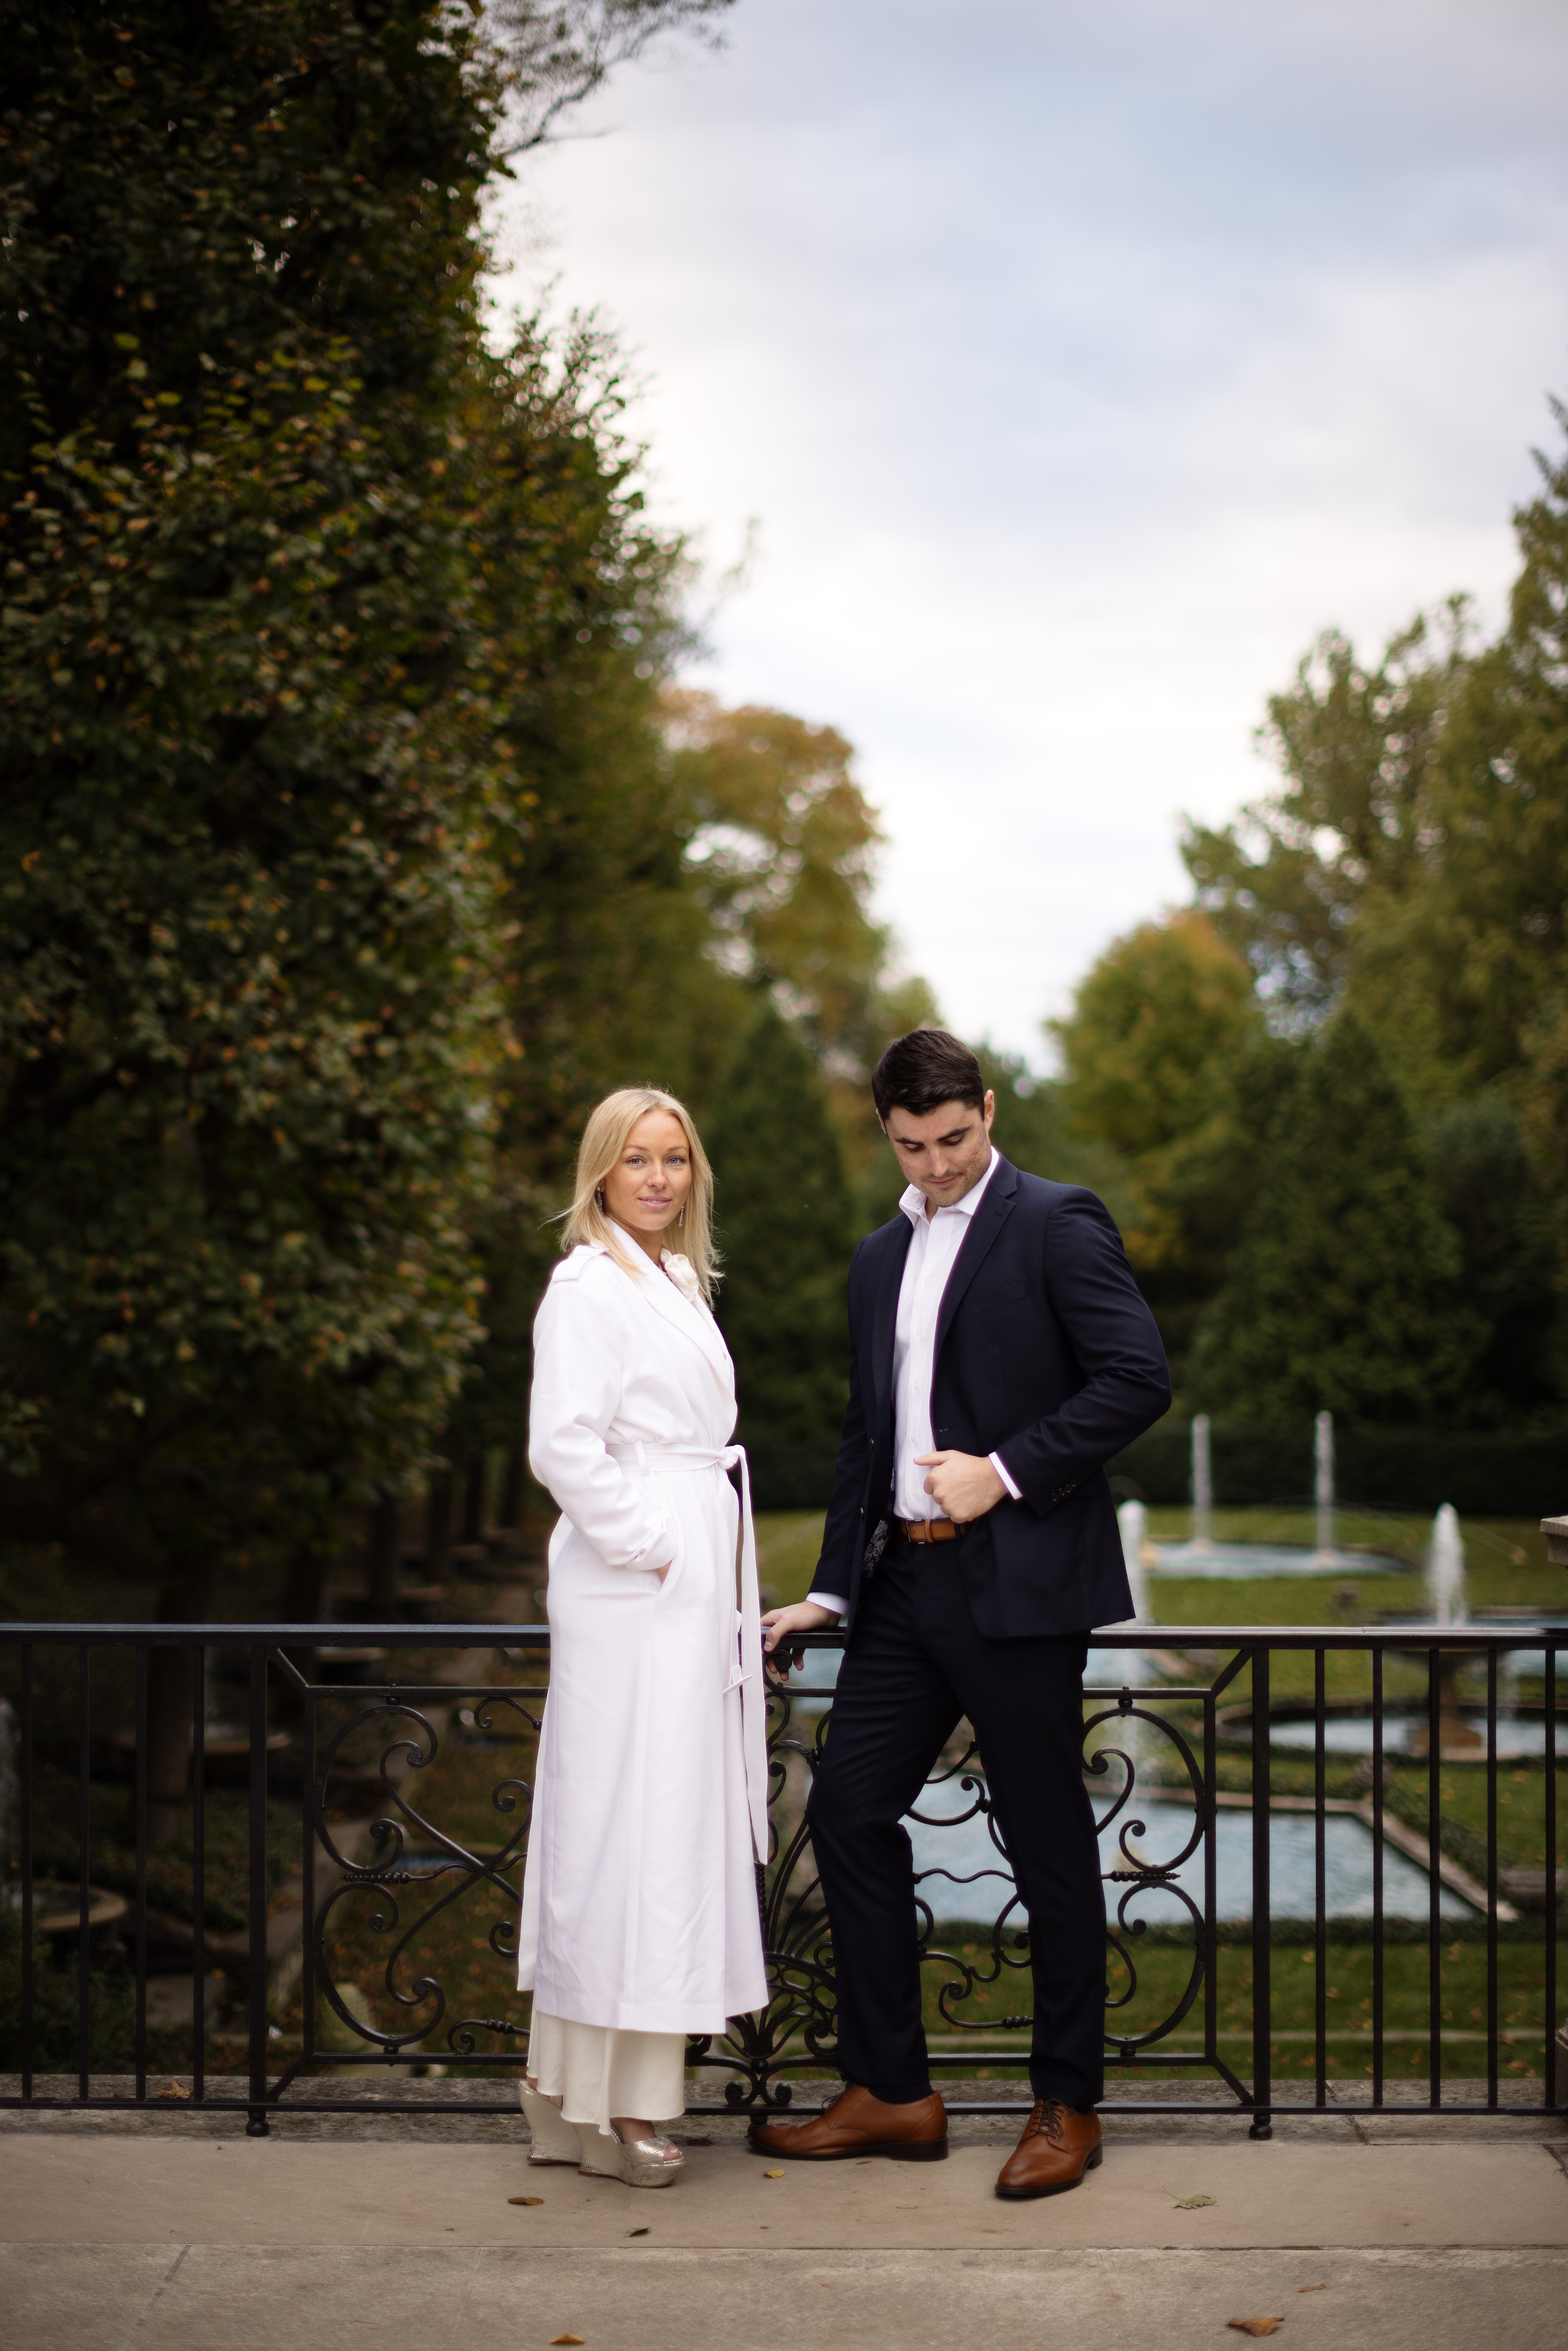 Longwood Gardens Engagement Photos, Philadelphia Wedding and Engagement Photographer